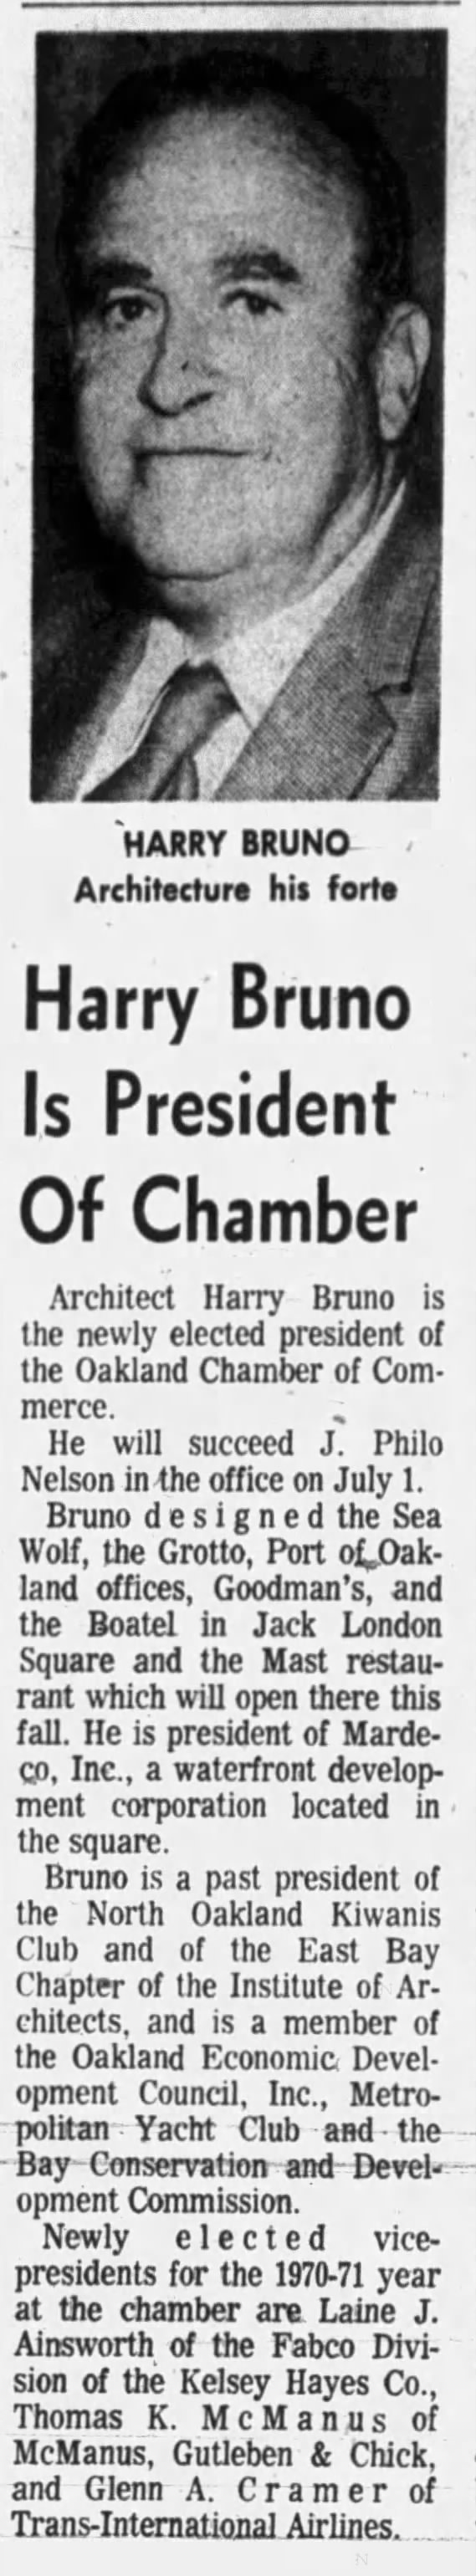 “Harry Bruno Named President of Oakland Chamber of Commerce,” June 16, 1970. p. 13.